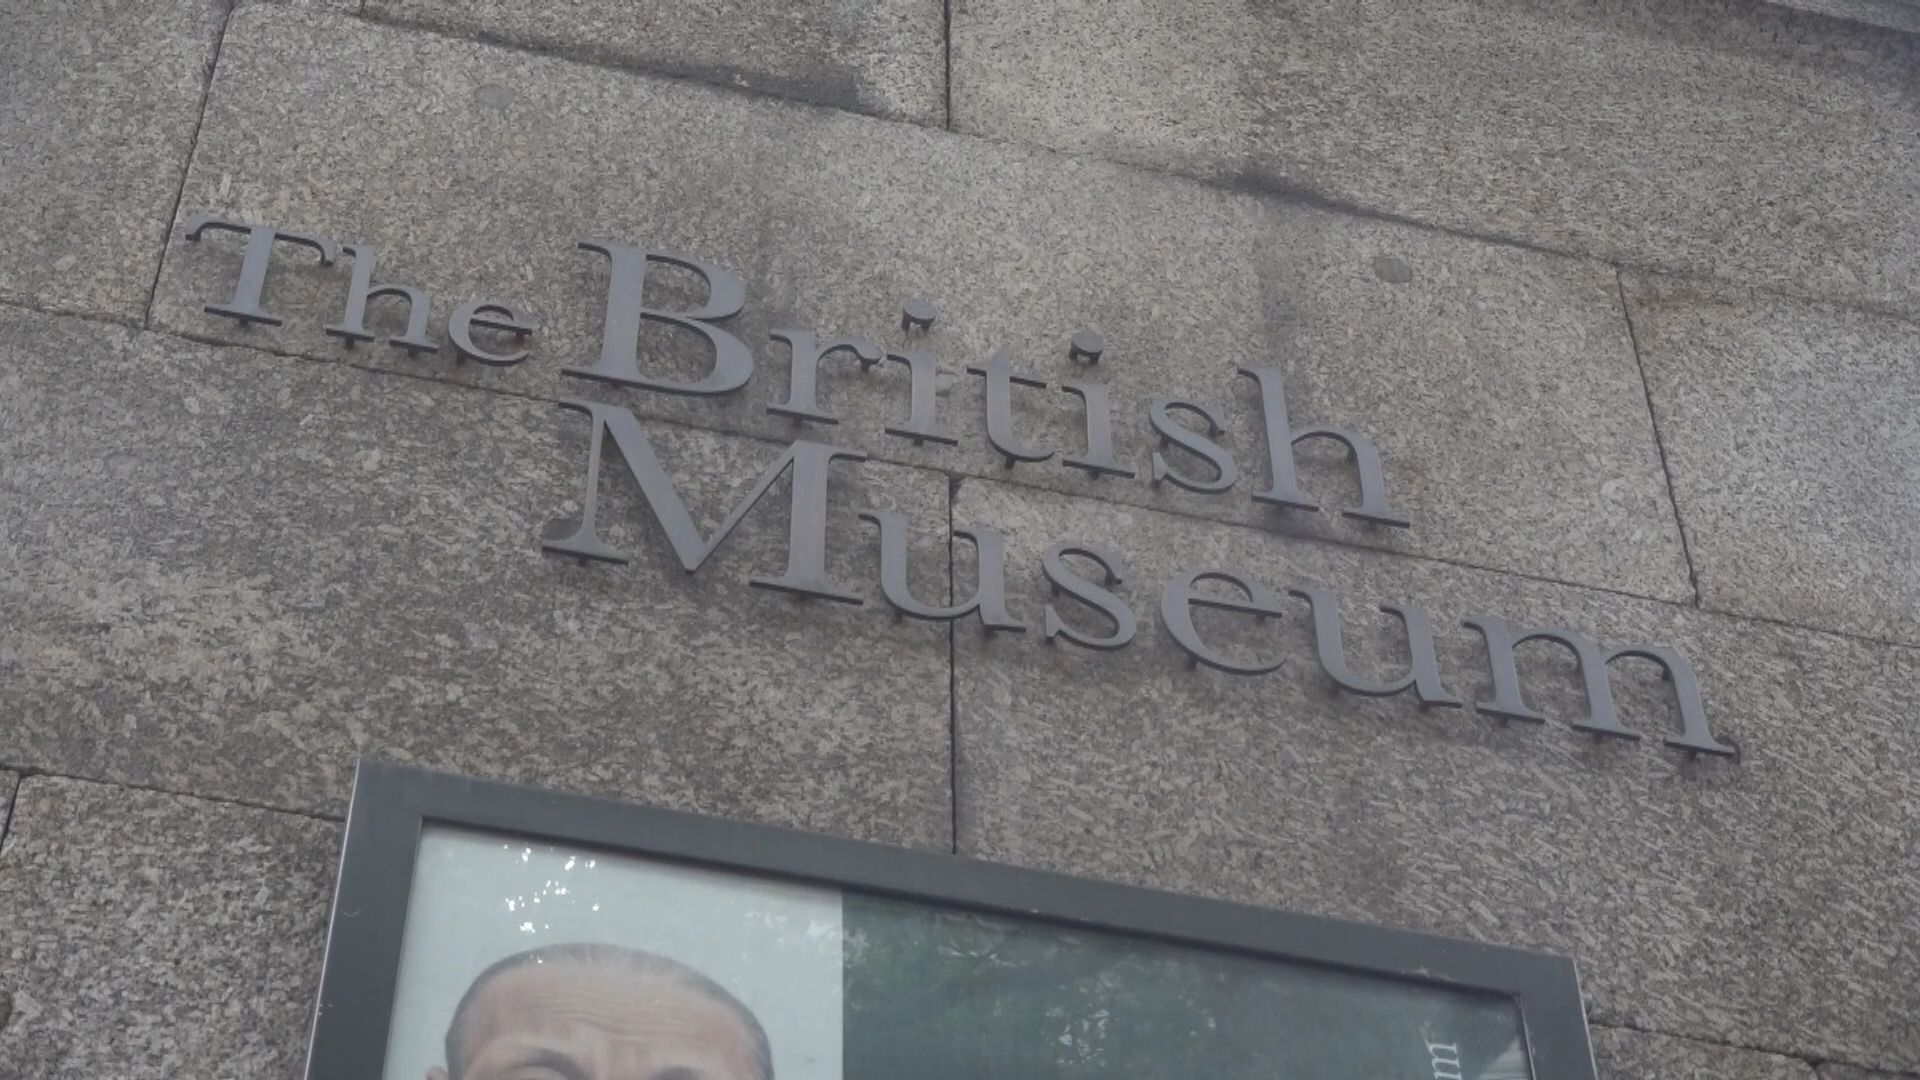 大英博物館進行盤點 初步估算約二千件藏品被盜